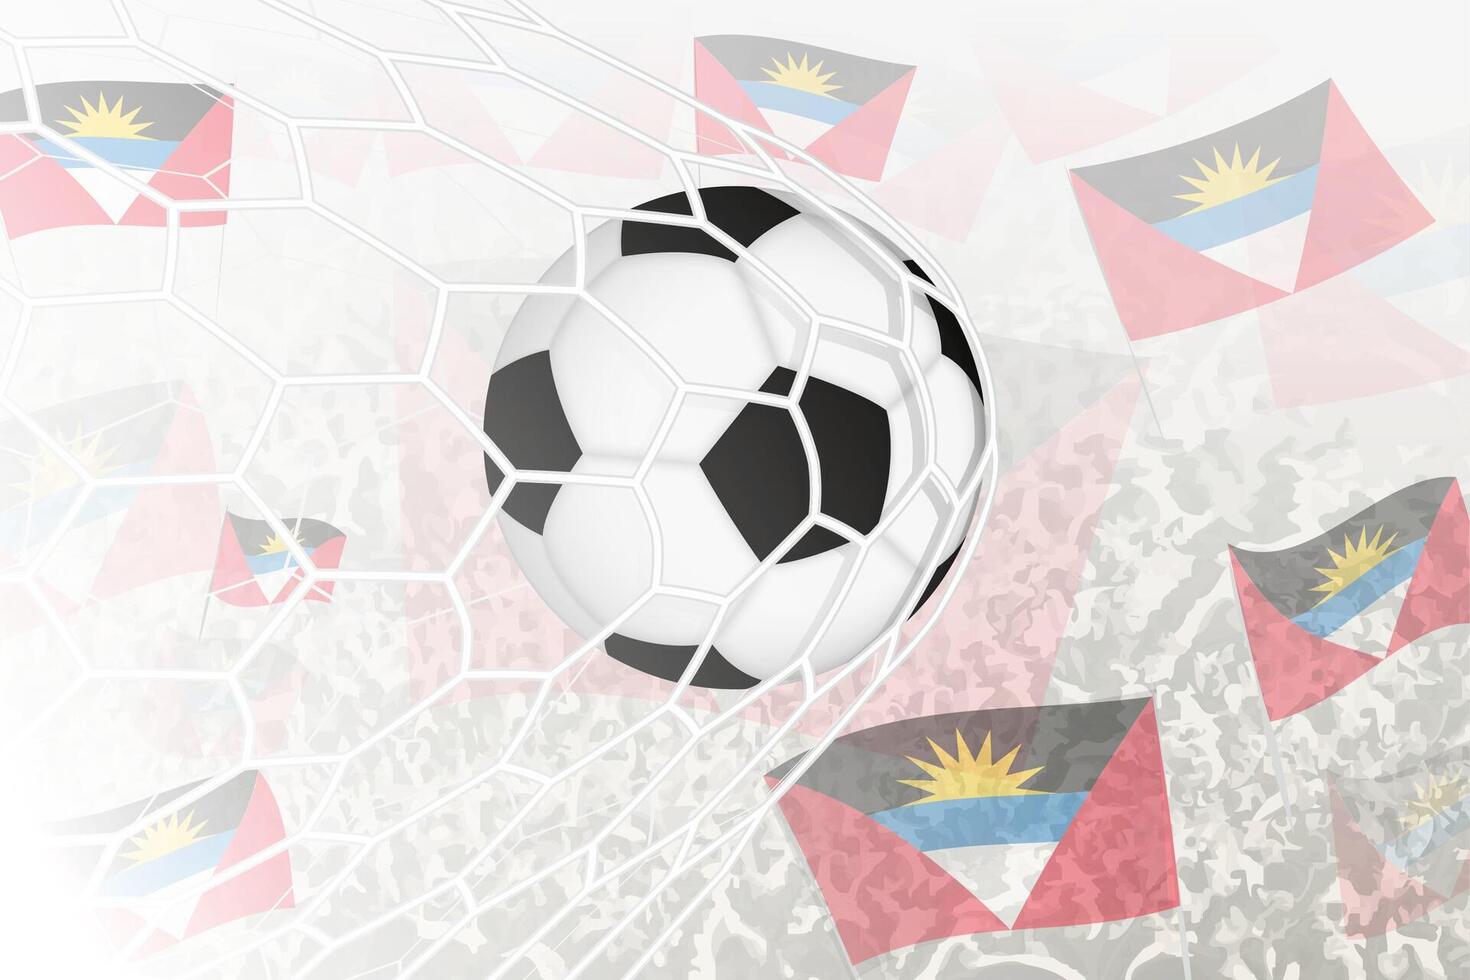 nationell fotboll team av antigua och barbuda gjorde mål mål. boll i mål netto, medan fotboll supportrar är vinka de antigua och barbuda flagga i de bakgrund. vektor